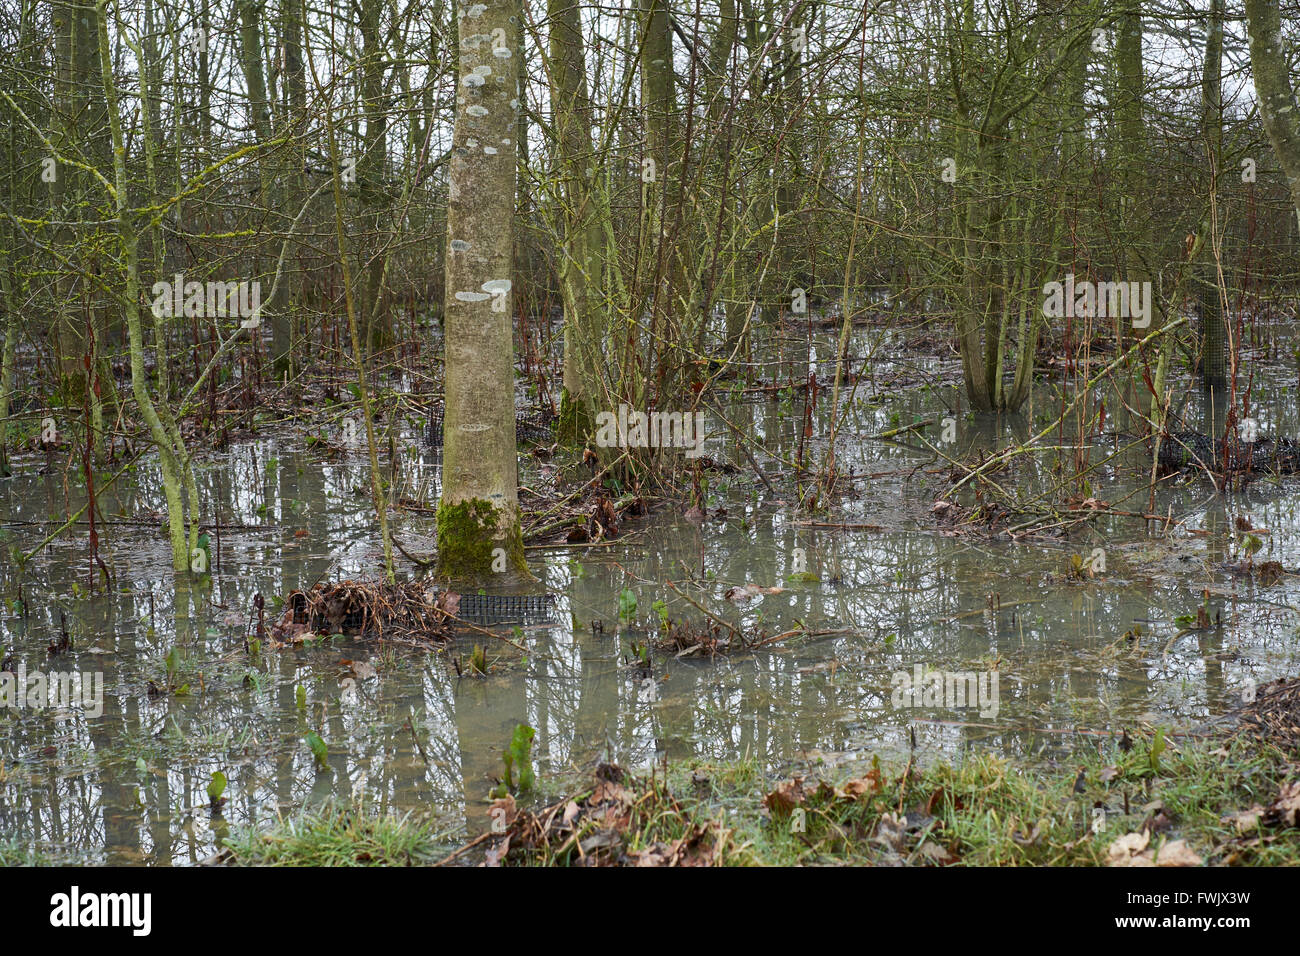 Arbres dans un bosquet agricoles inondés par les eaux de ruissellement des champs voisins. Bedfordshire, Royaume-Uni. Banque D'Images